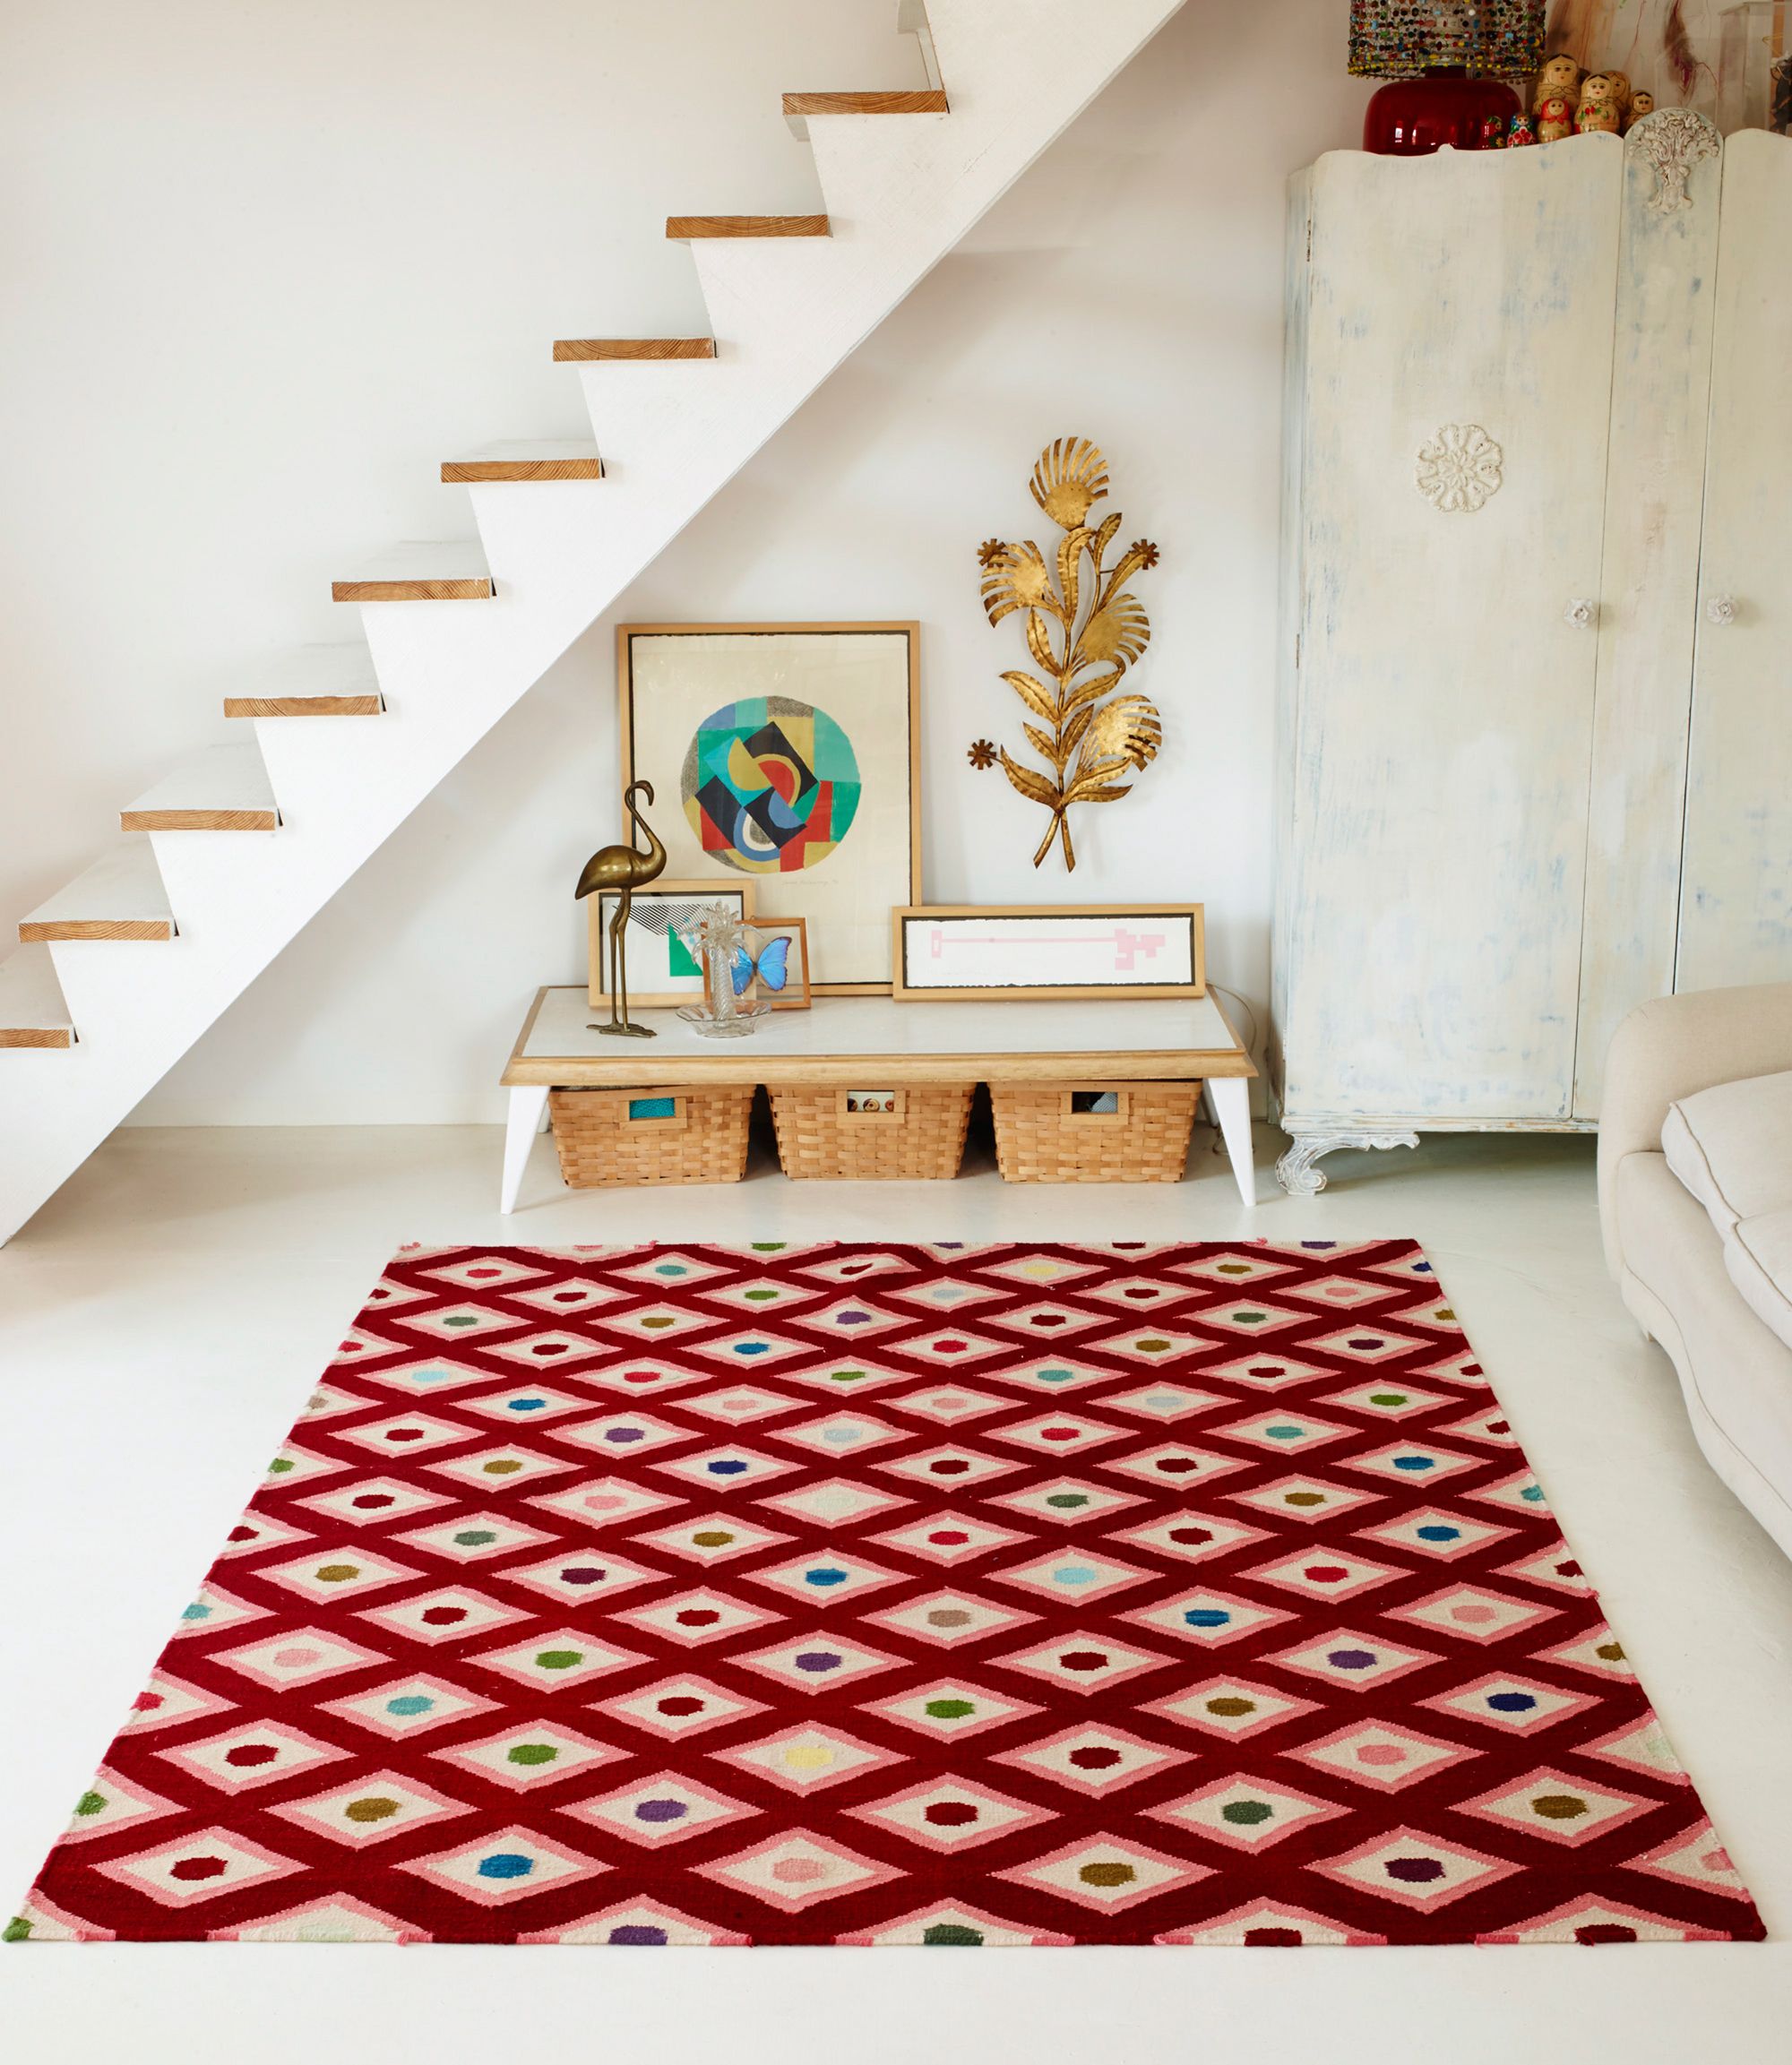 Las alfombras que decoran el dormitorio y lo hacen más cálido